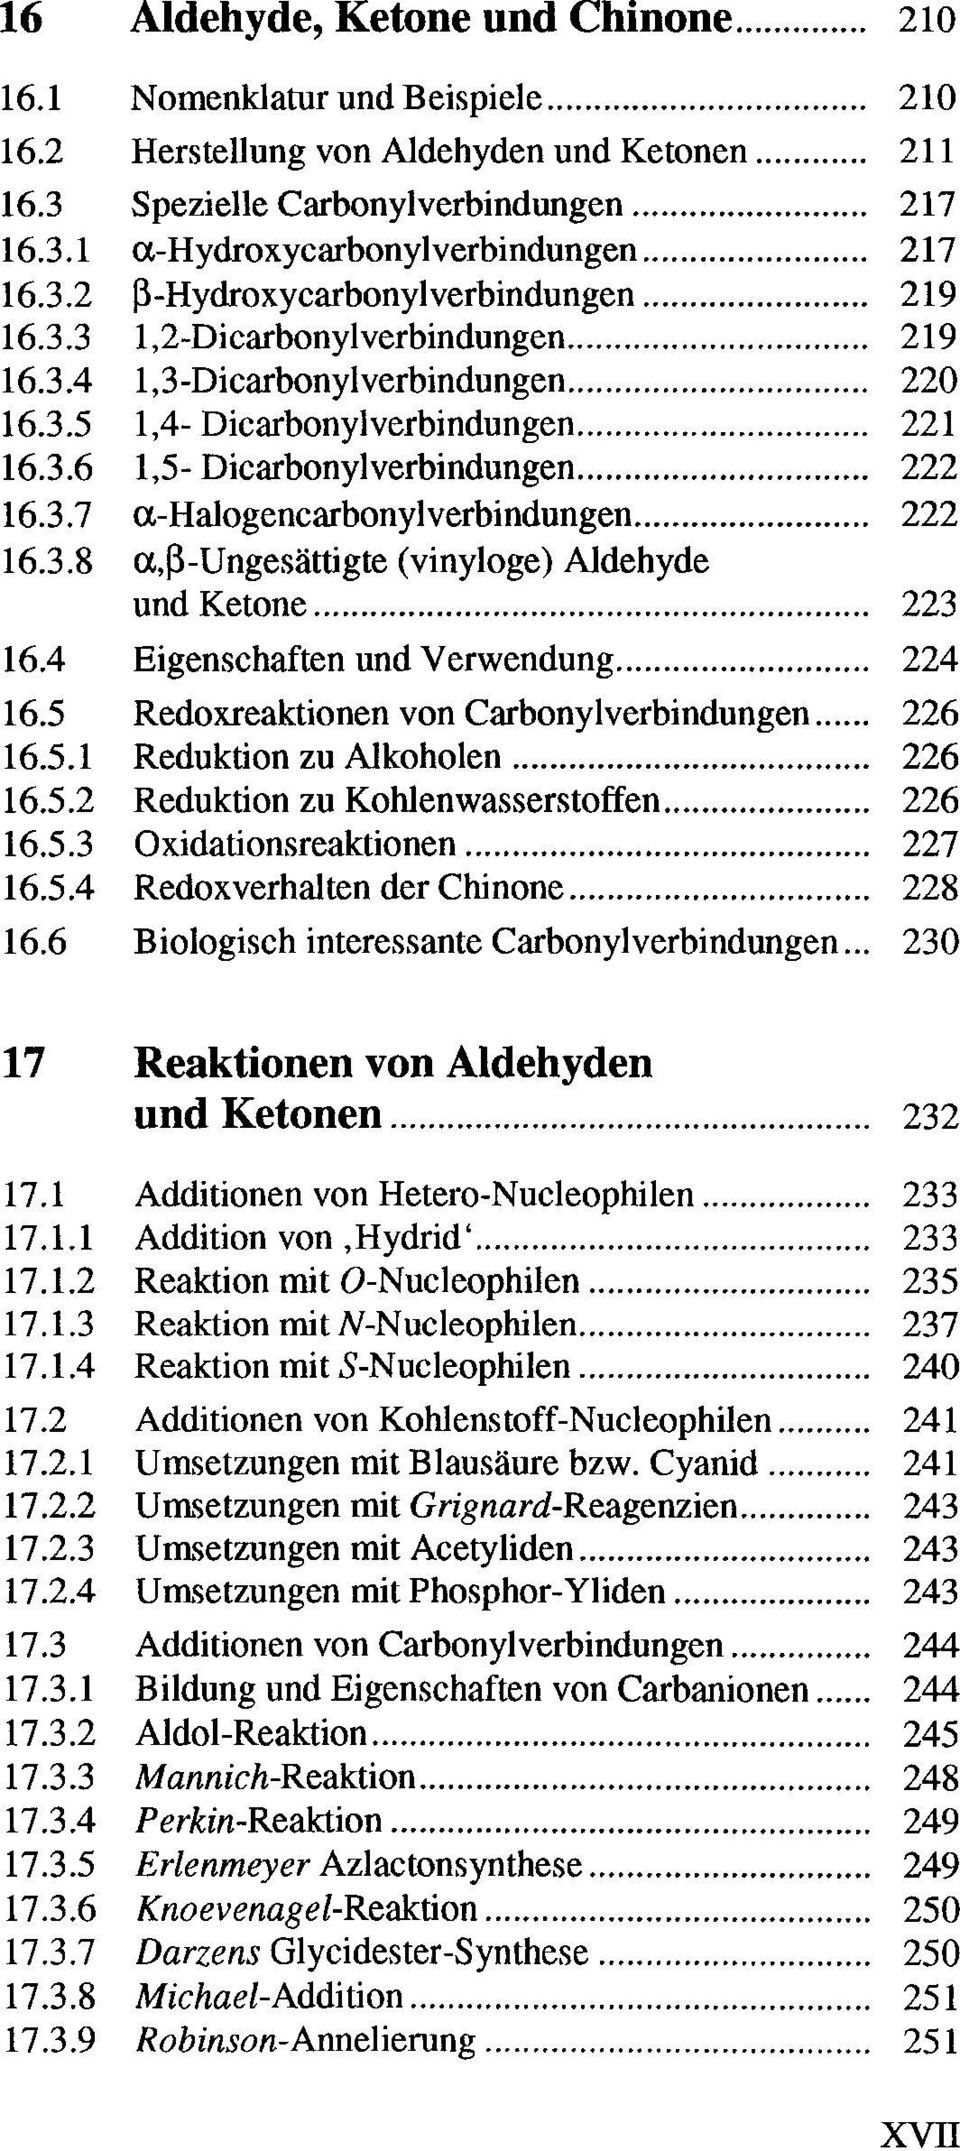 .. 221 16.3.6 1,5- Dicarbonylverbindungen... 222 16.3.7 a.-halogencarbonylverbindungen... 222 16.3.8 a.,ß-ungesättigte (vinyloge) Aldehyde und Ketone... 223 16.4 Eigenschaften und Verwendung... 224 16.